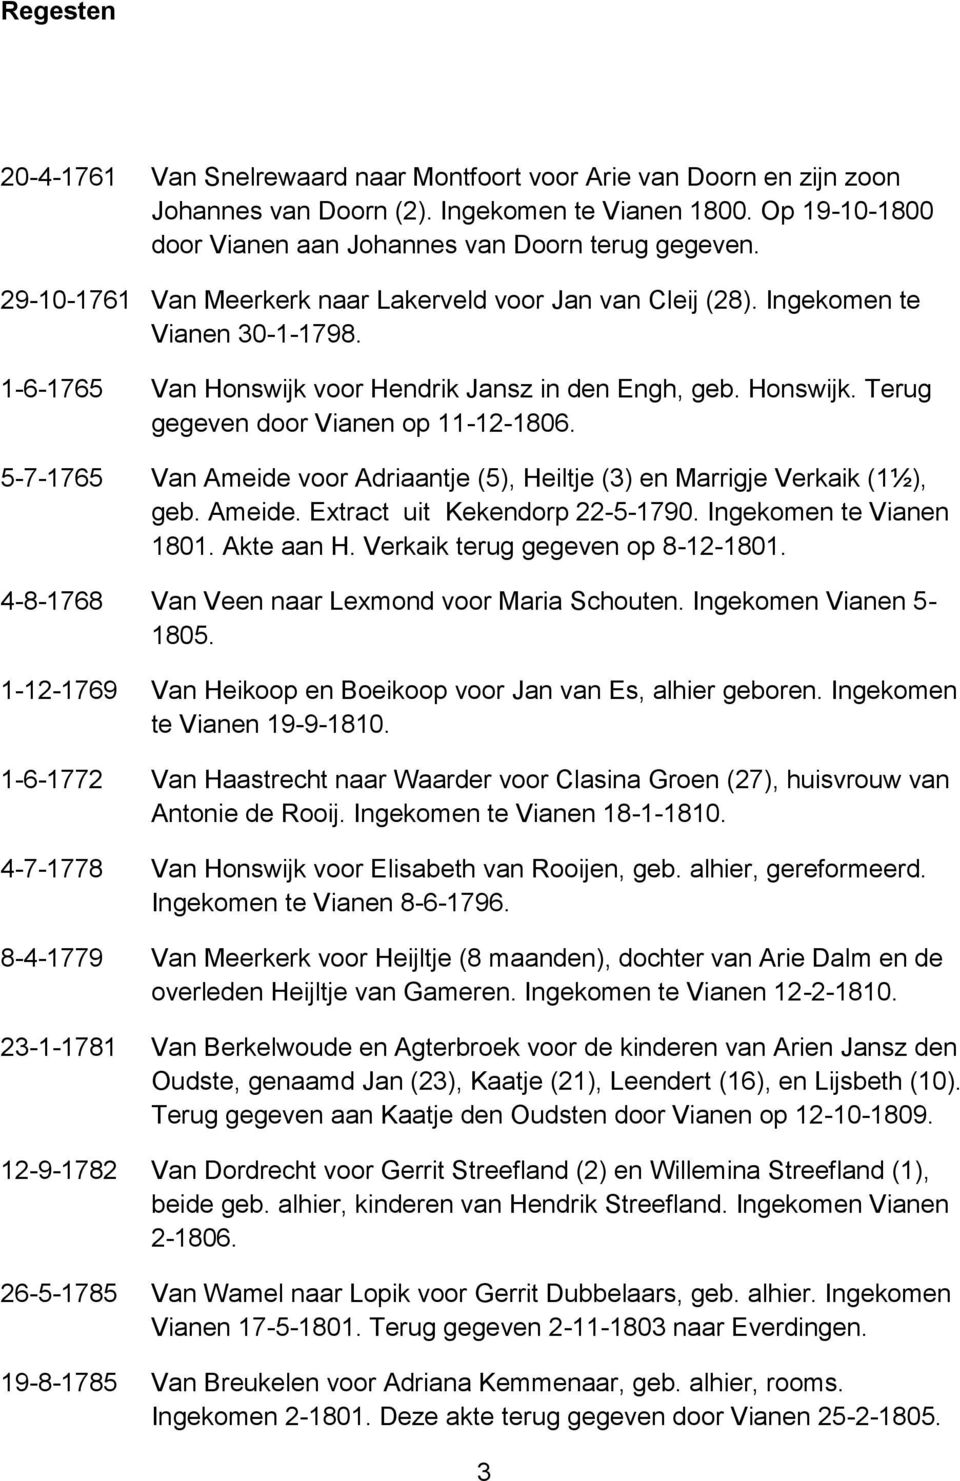 5-7-1765 Van Ameide voor Adriaantje (5), Heiltje (3) en Marrigje Verkaik (1½), geb. Ameide. Extract uit Kekendorp 22-5-1790. Ingekomen te Vianen 1801. Akte aan H. Verkaik terug gegeven op 8-12-1801.